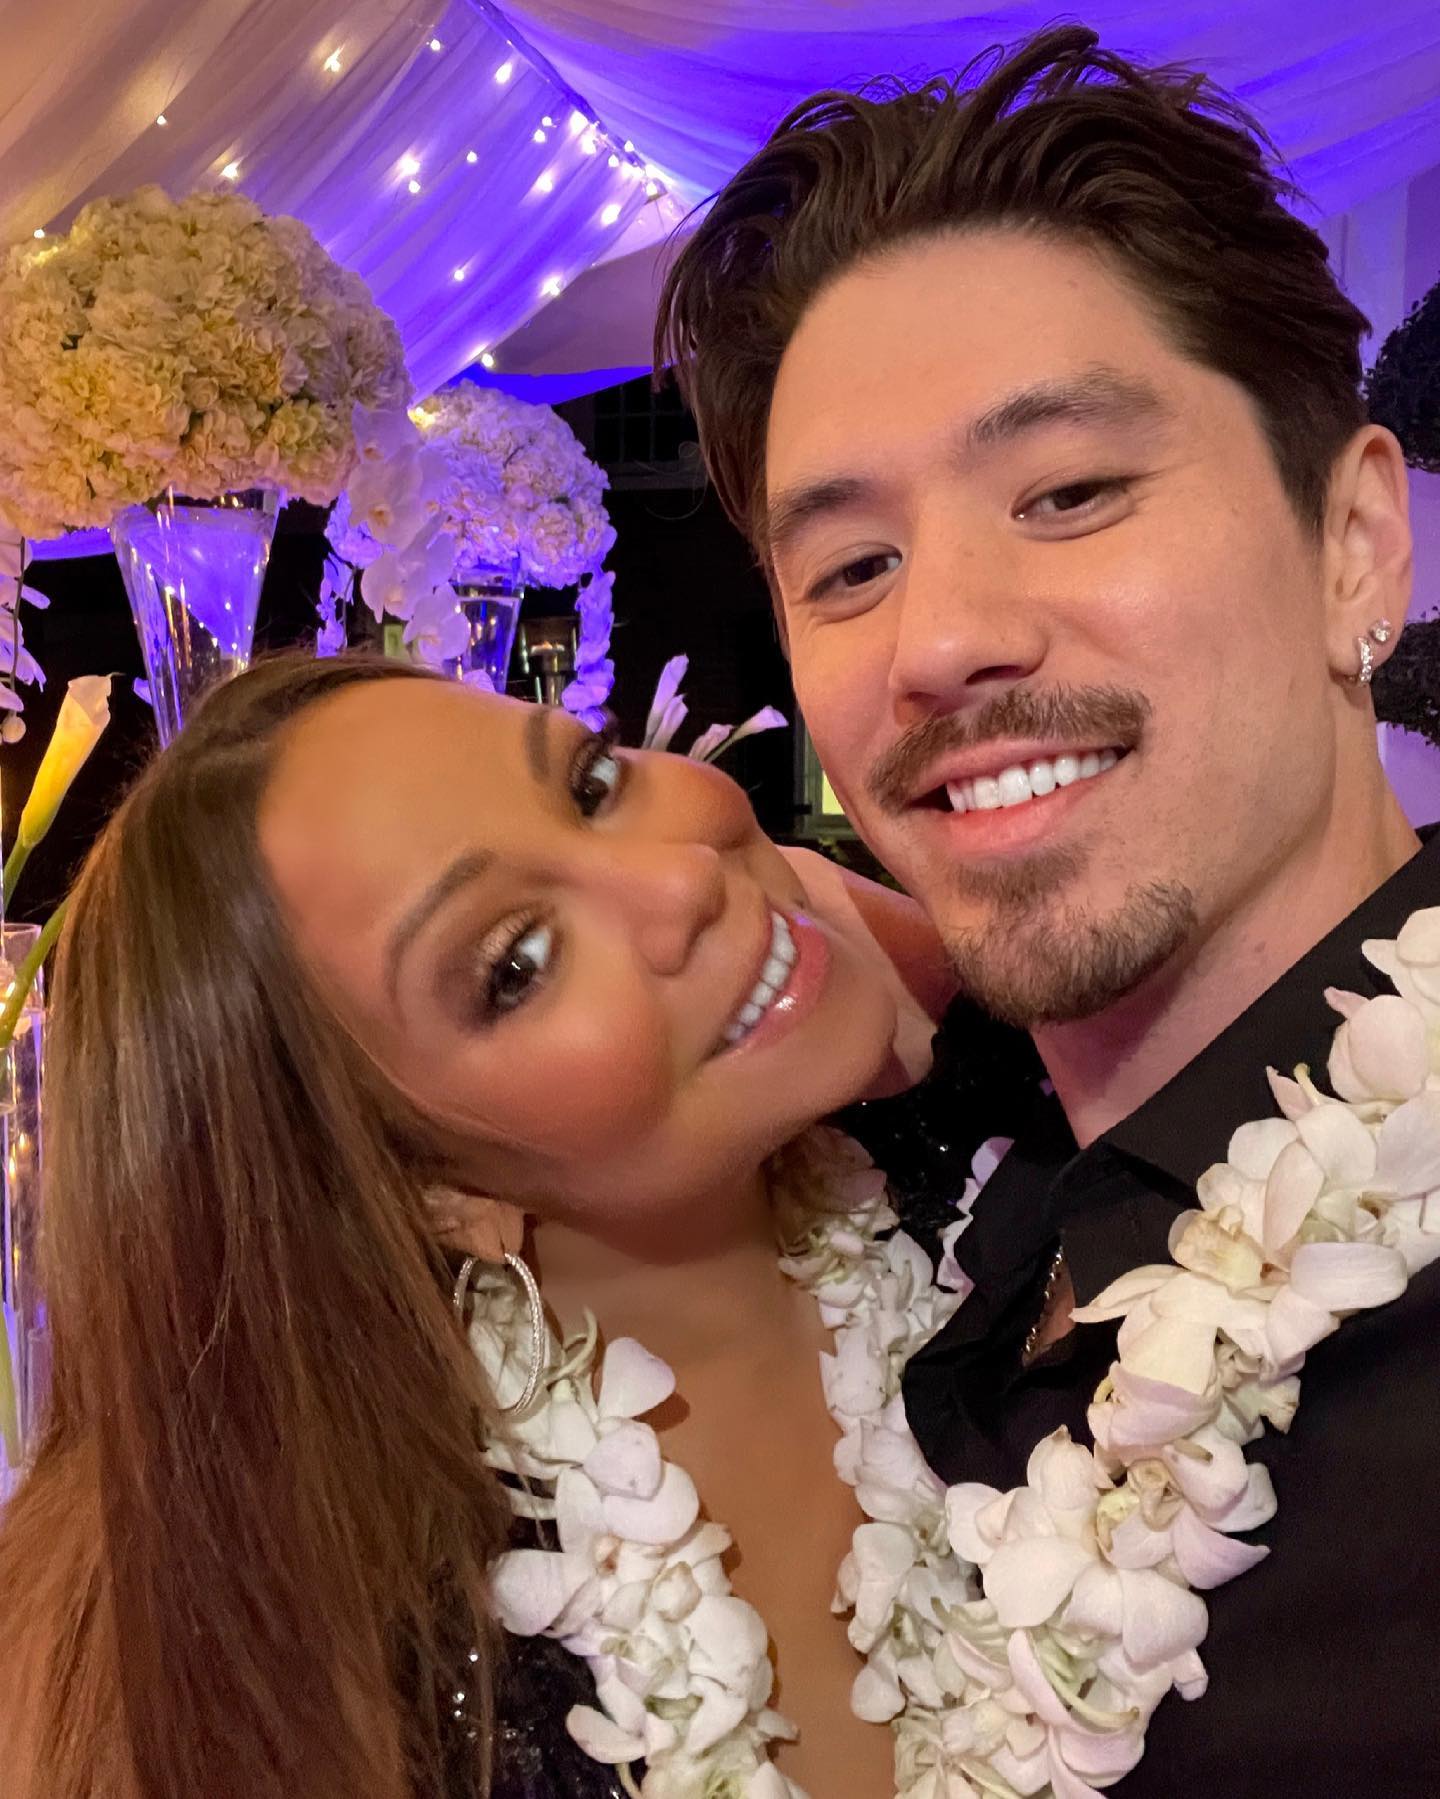 Η Mariah Carey χώρισε μετά από 7 χρόνια σχέσης με τον Bryan Tanaka